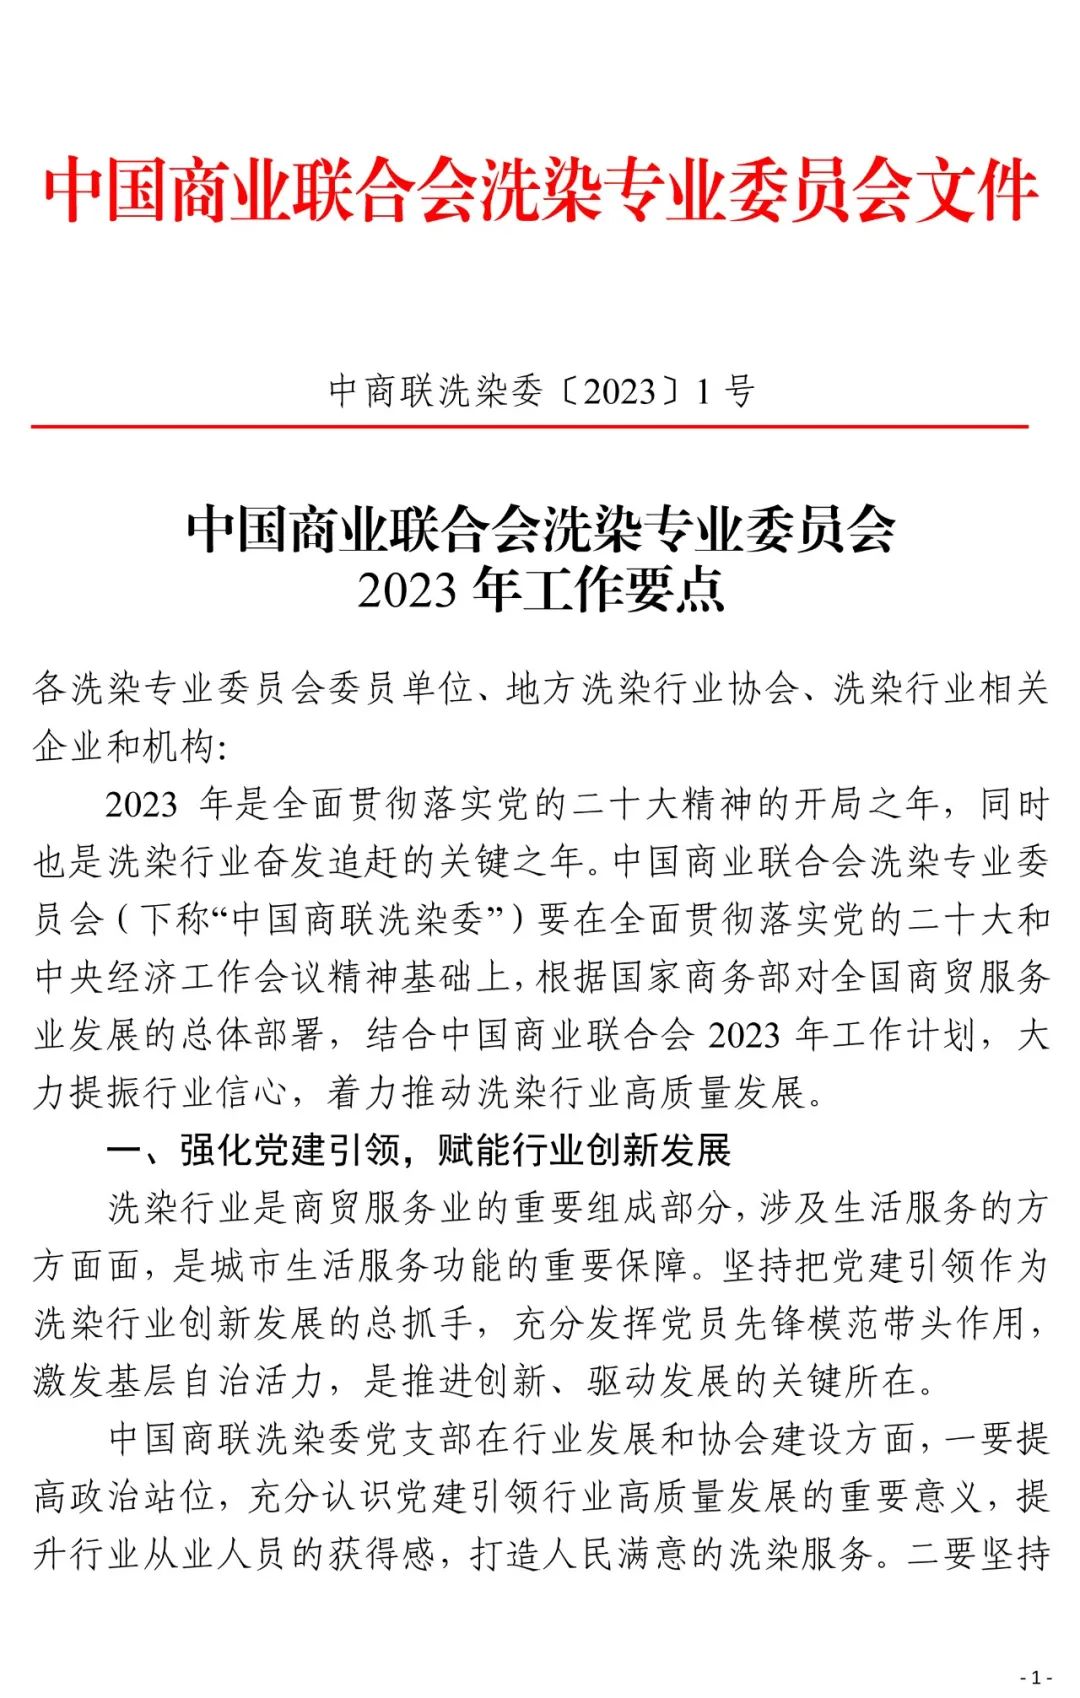 中国商联洗染委2023年工作要点发布